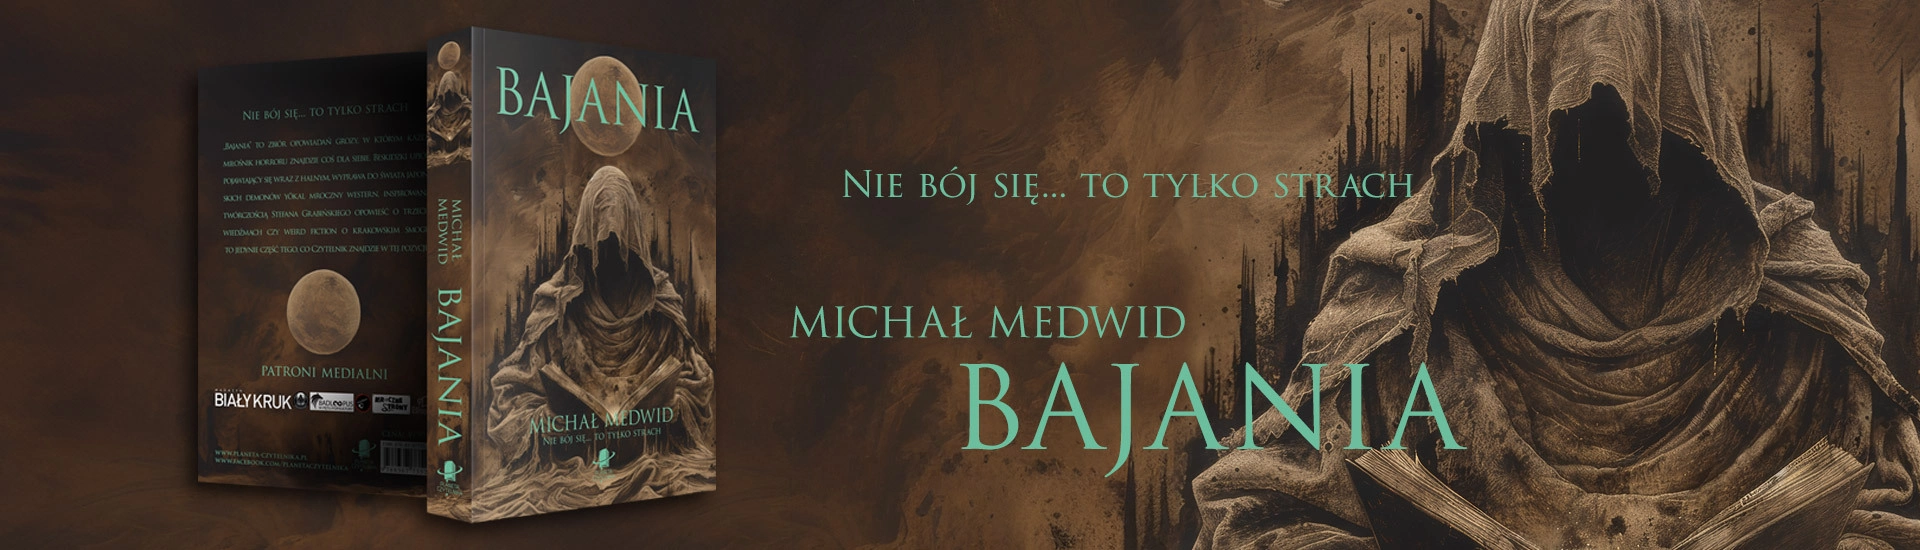 Bajania - Michał Medwid